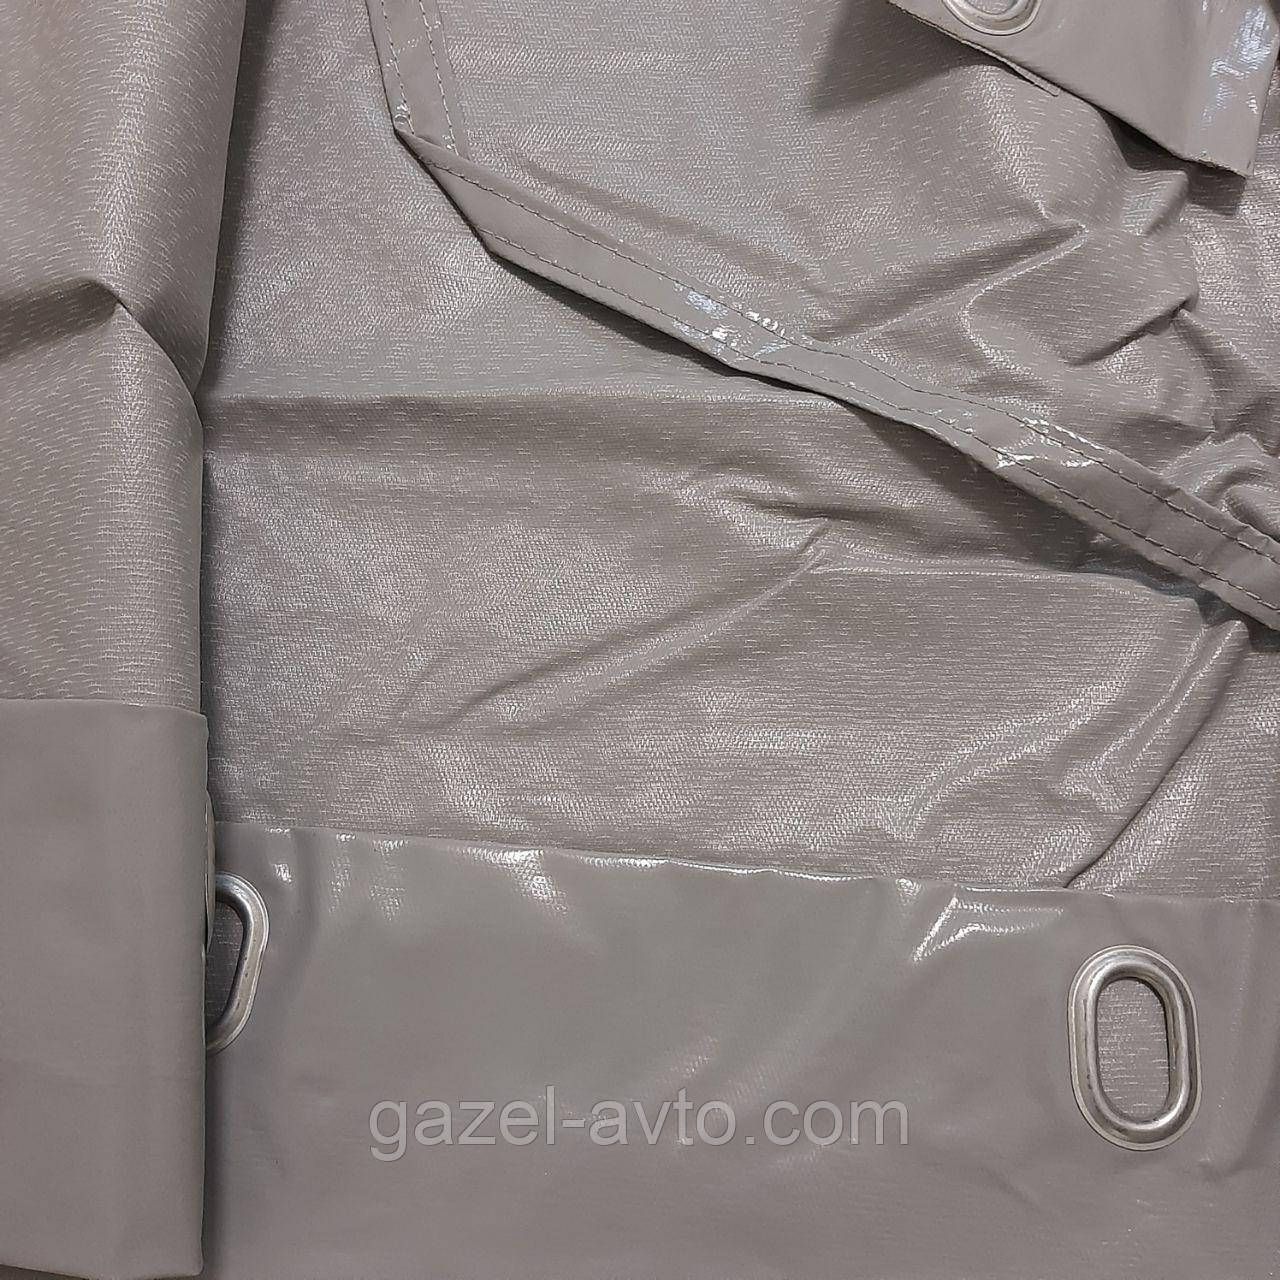 Тент Газель-Дуэт 2- х сторонний нового образца 8 люверсный усиленый серый 500г/м² "БелТЕНТ" (покупн. ГАЗ)